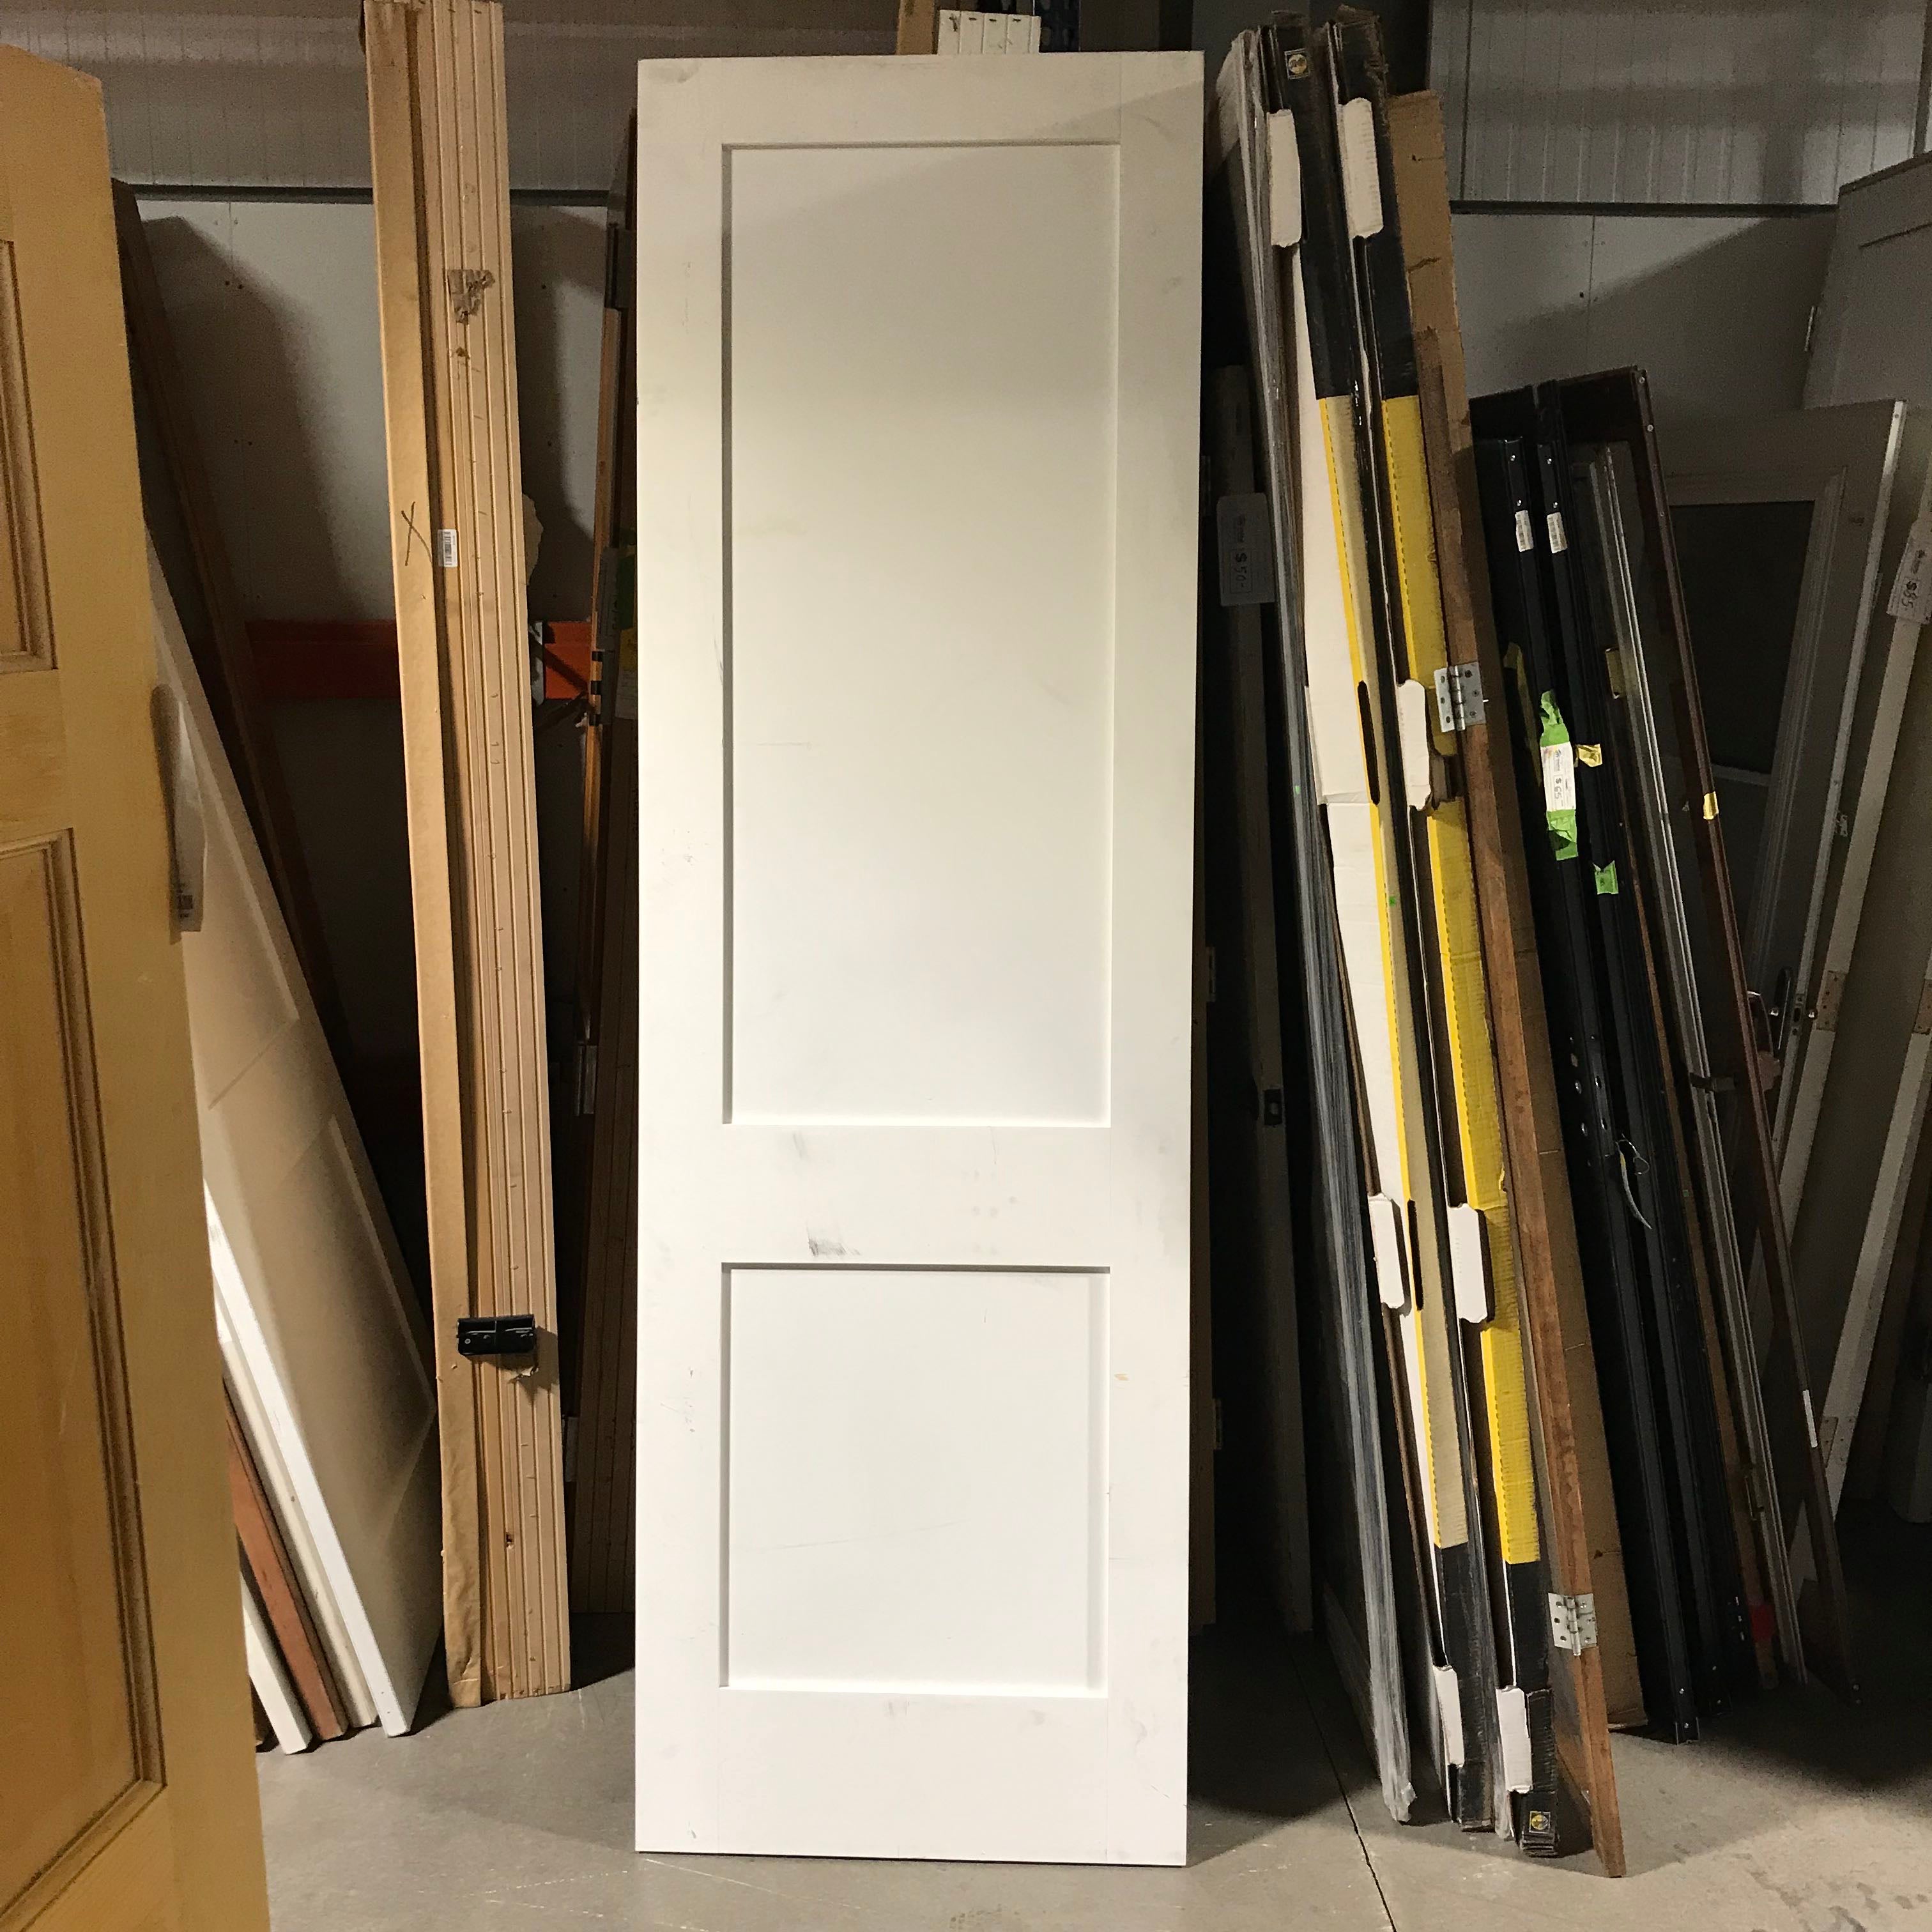 29.75"x 96"x 1.375" 2 Panel Primed Solid Wood Interior Door